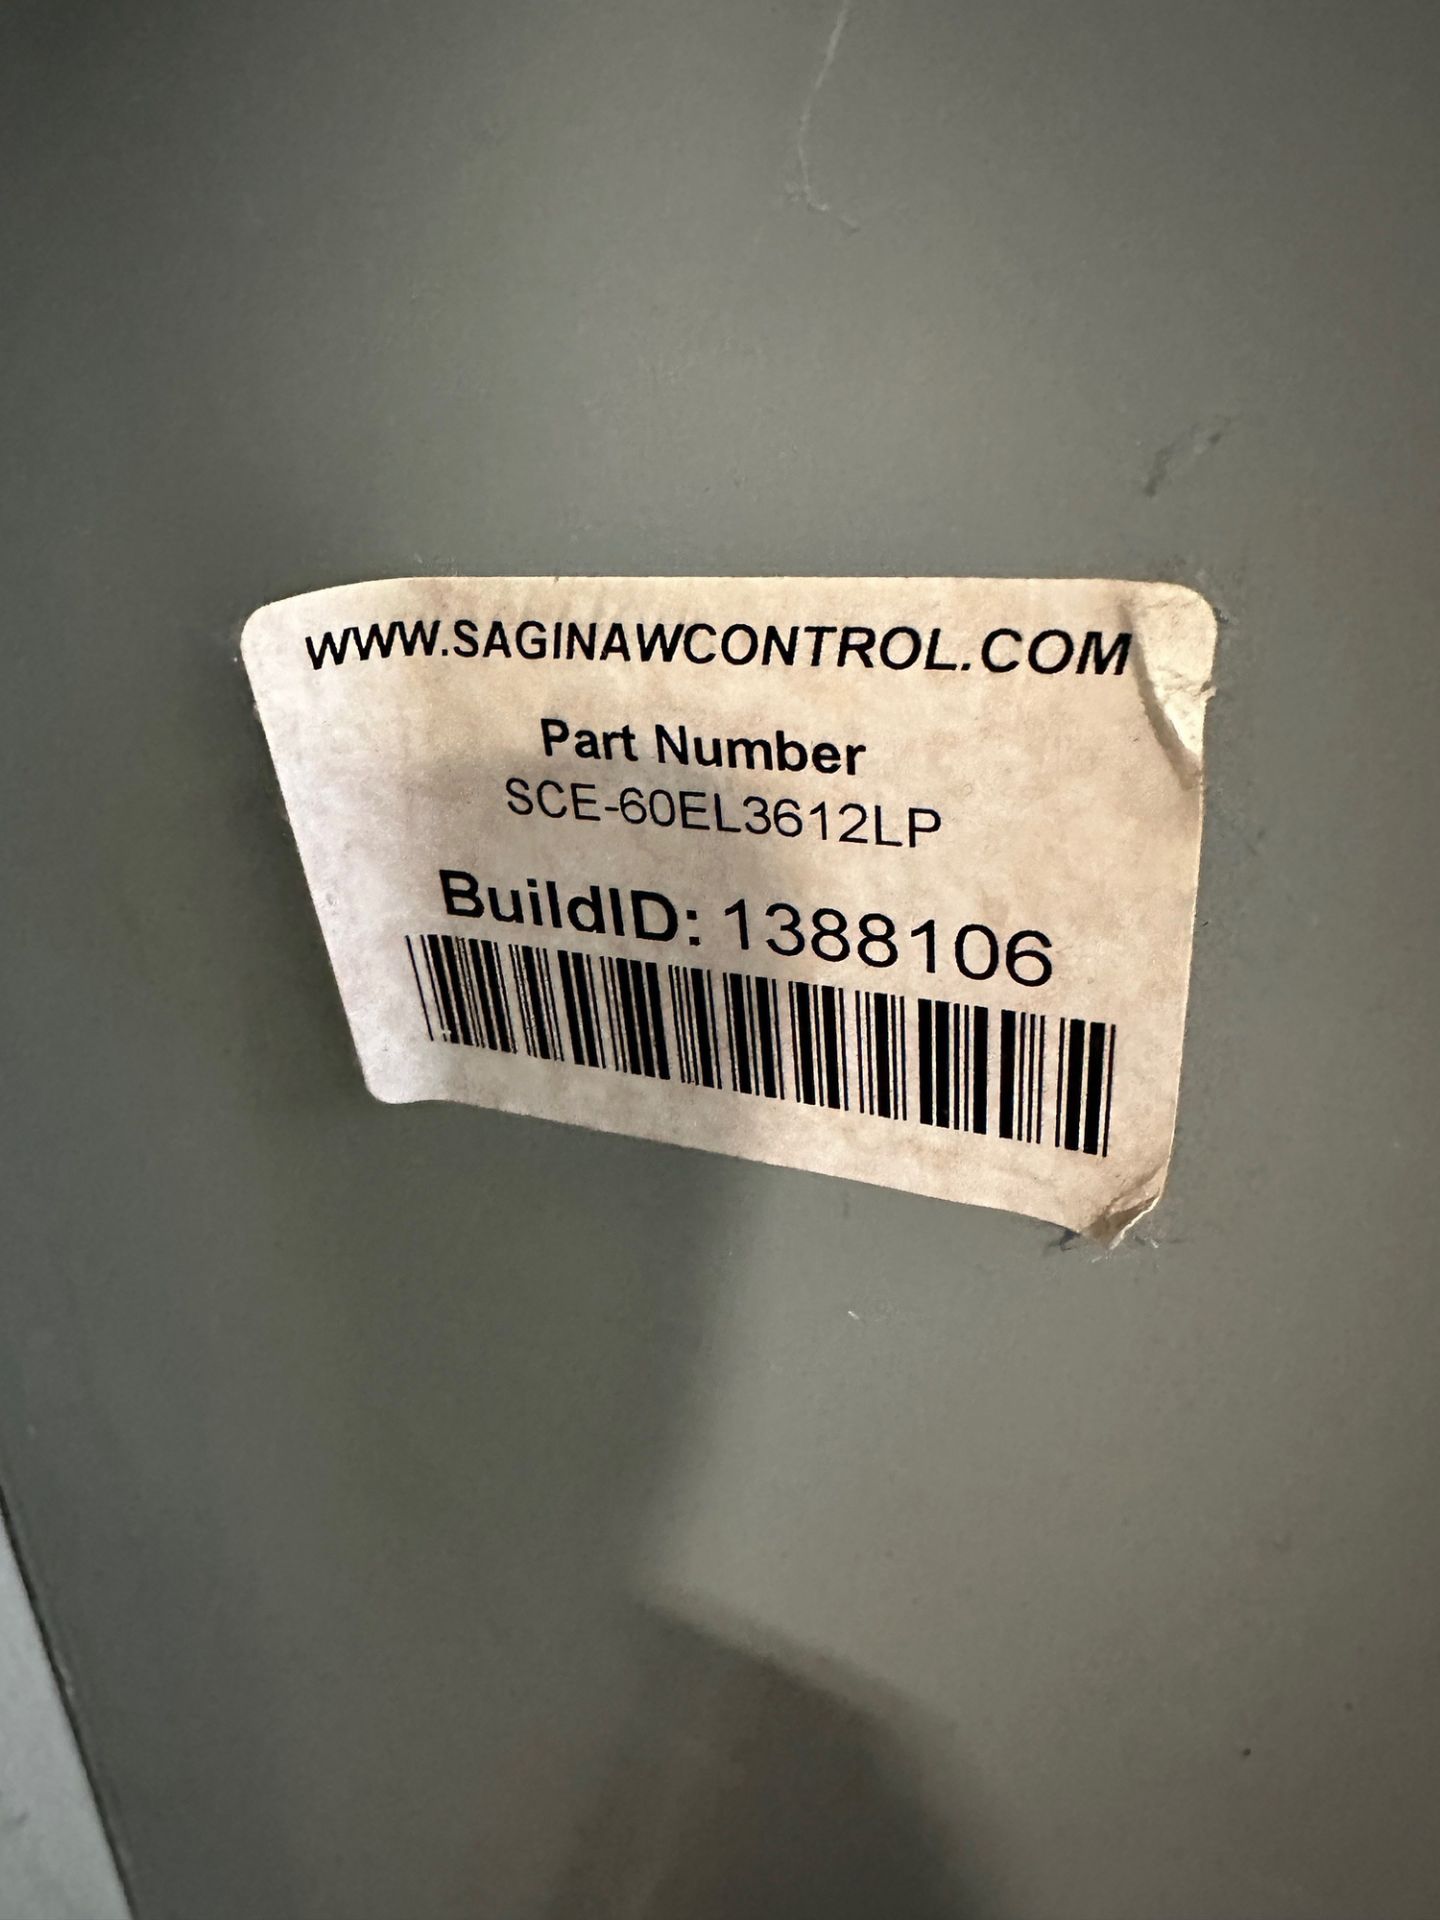 Saginaw Control Cellar Temperature Control Panel | Rig Fee $150 - Image 2 of 2